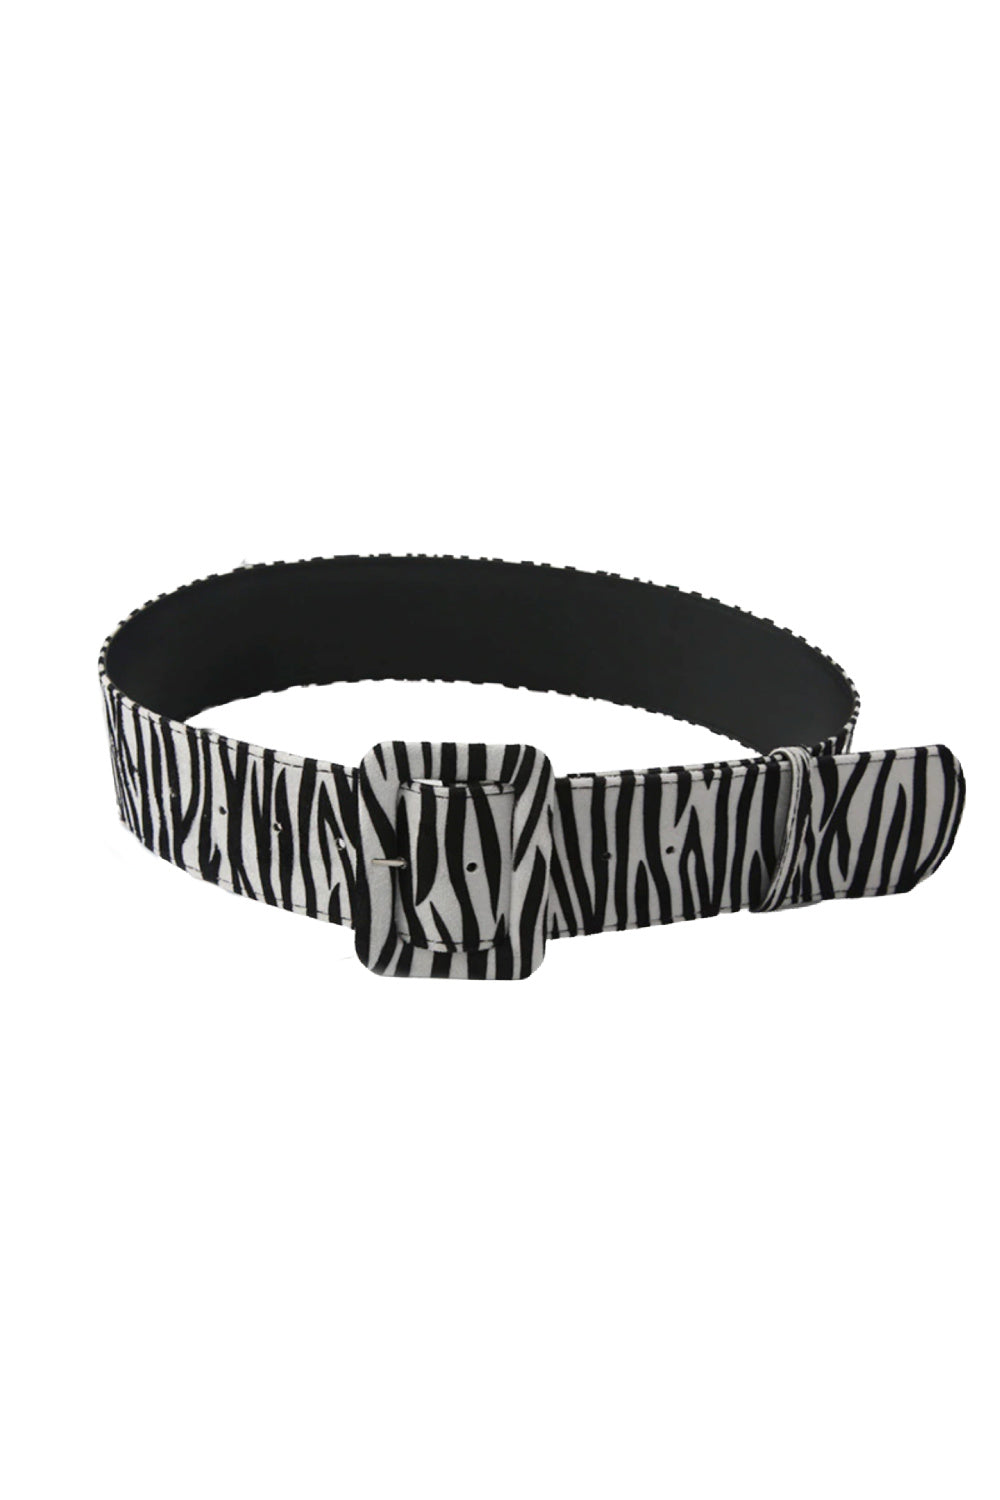 ladies-belt-zebra-print-black-white